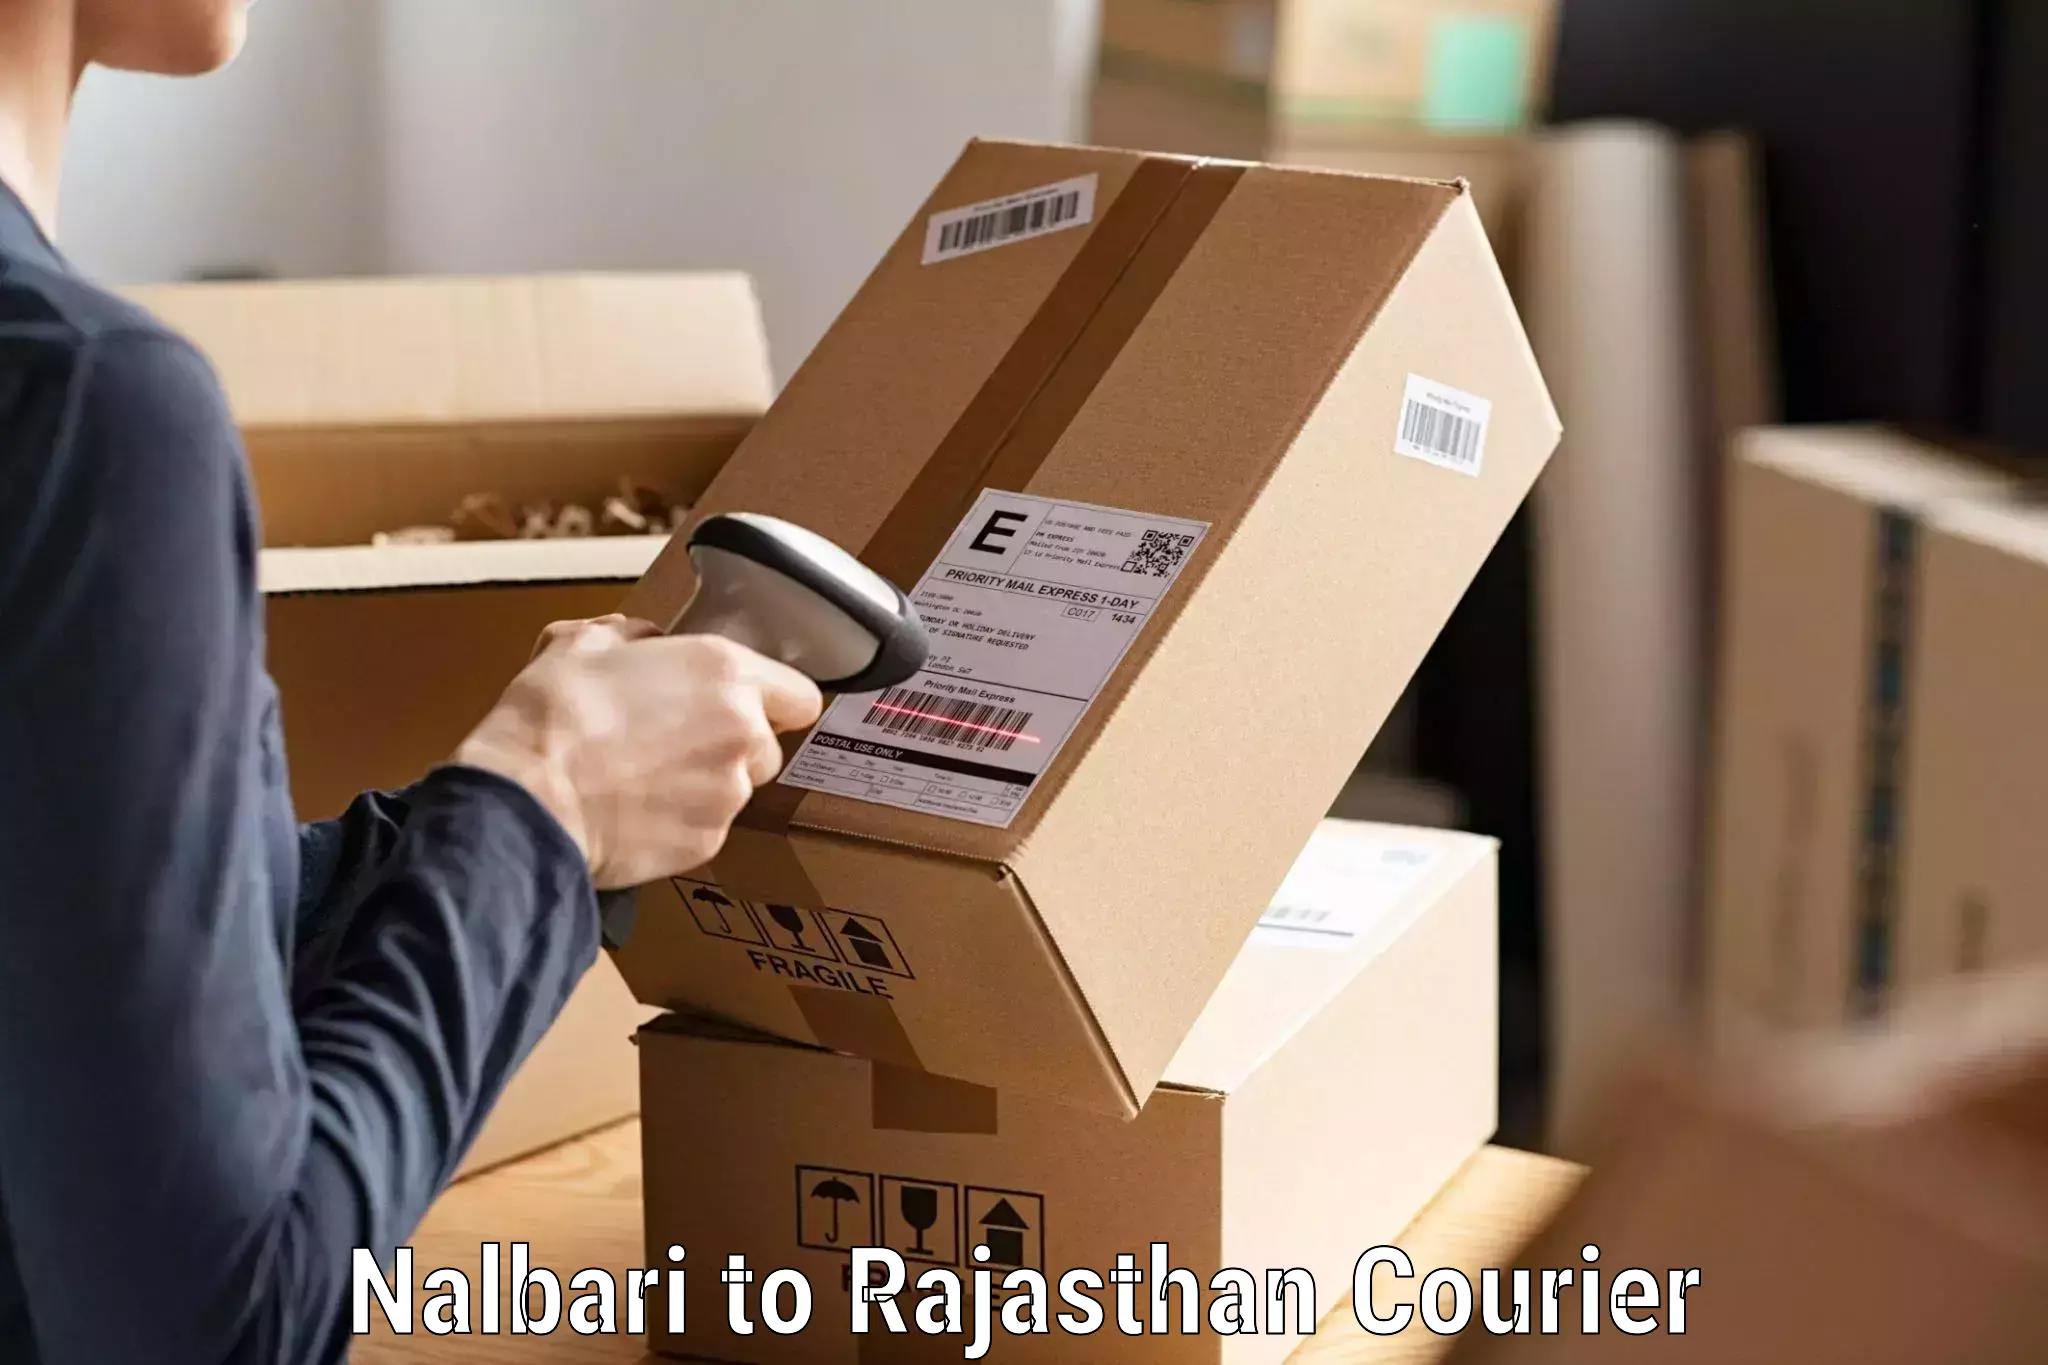 Efficient order fulfillment Nalbari to Ramganj Mandi